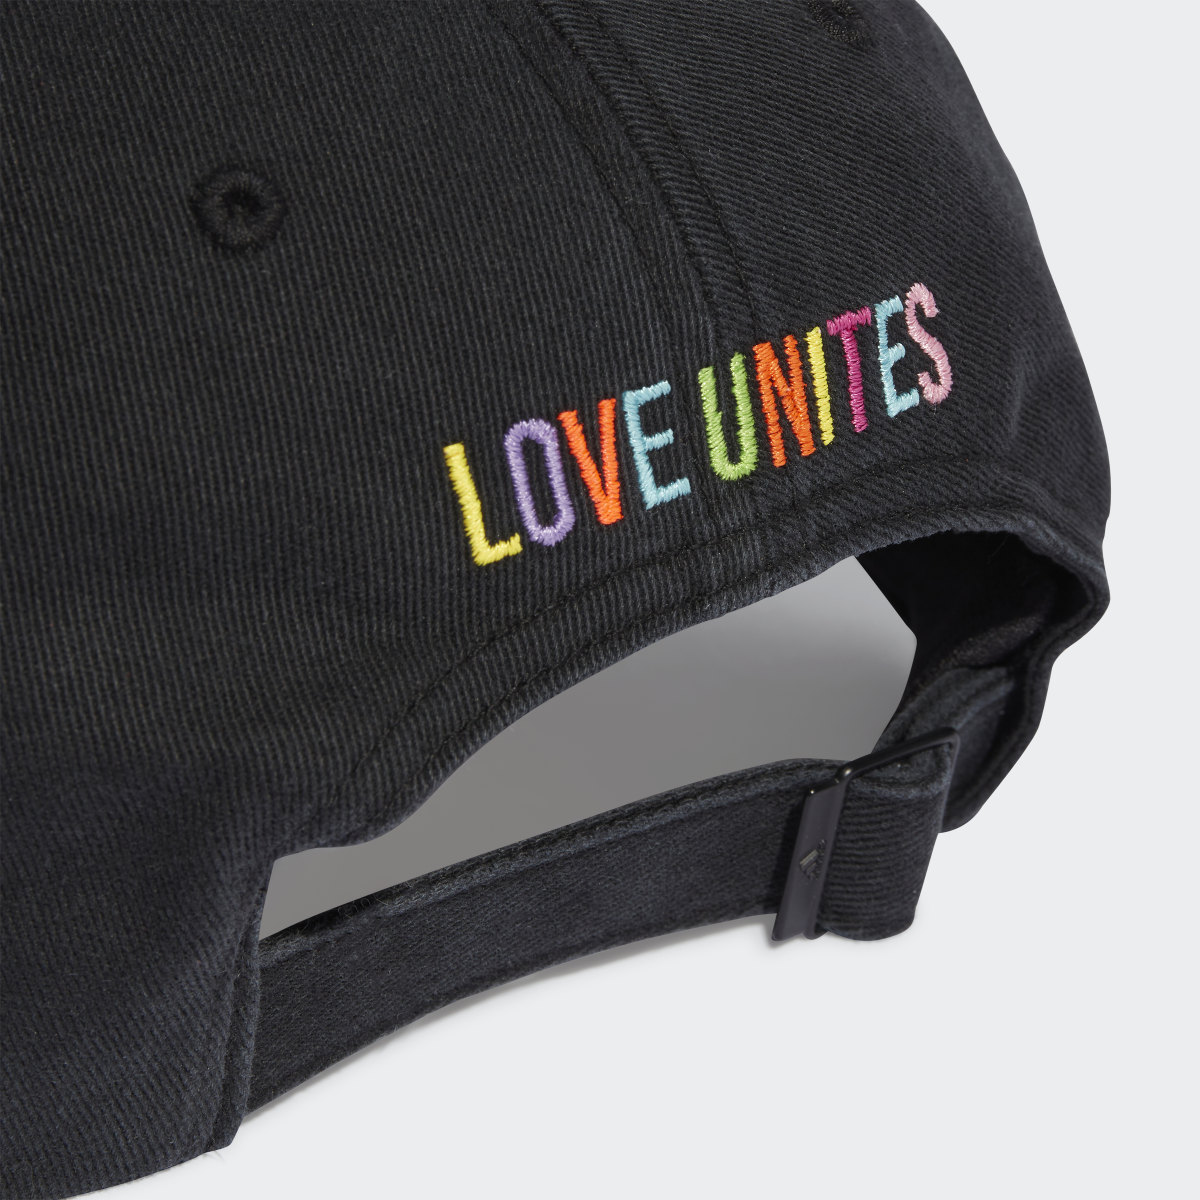 Adidas Casquette Pride Love Unites. 5